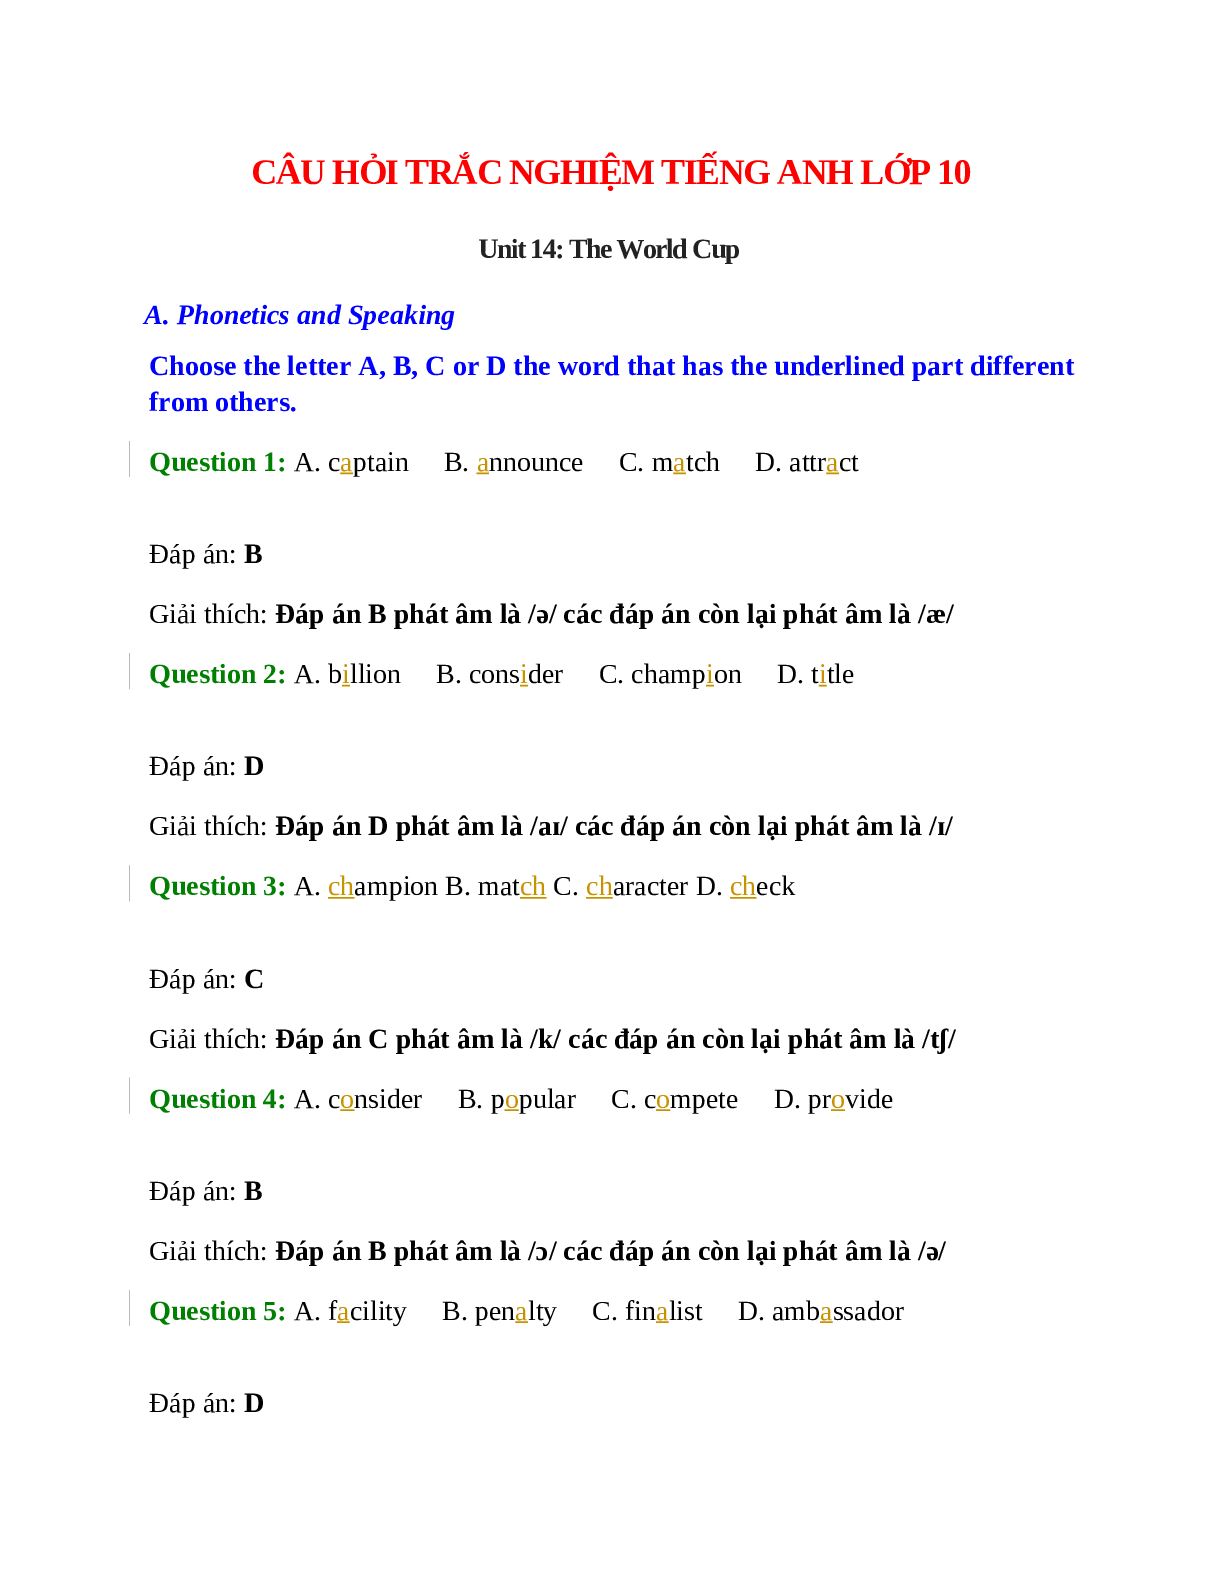 Trắc nghiệm Tiếng Anh 10 Unit 14 có đáp án: The World Cup (trang 1)